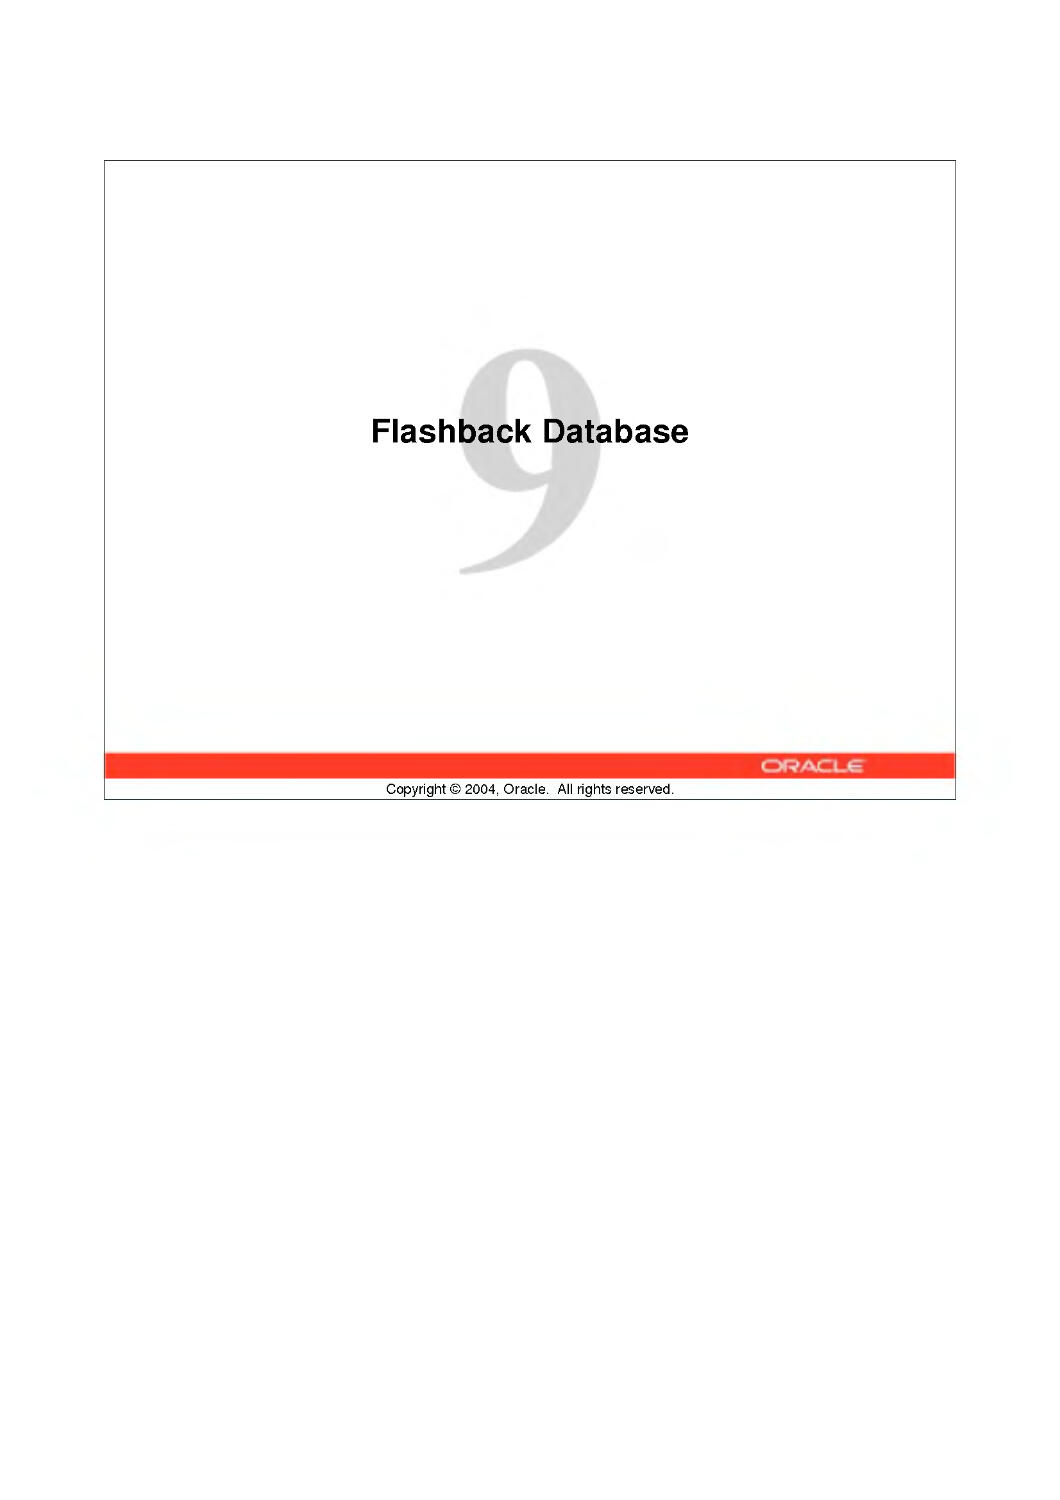 9 Flashback Database